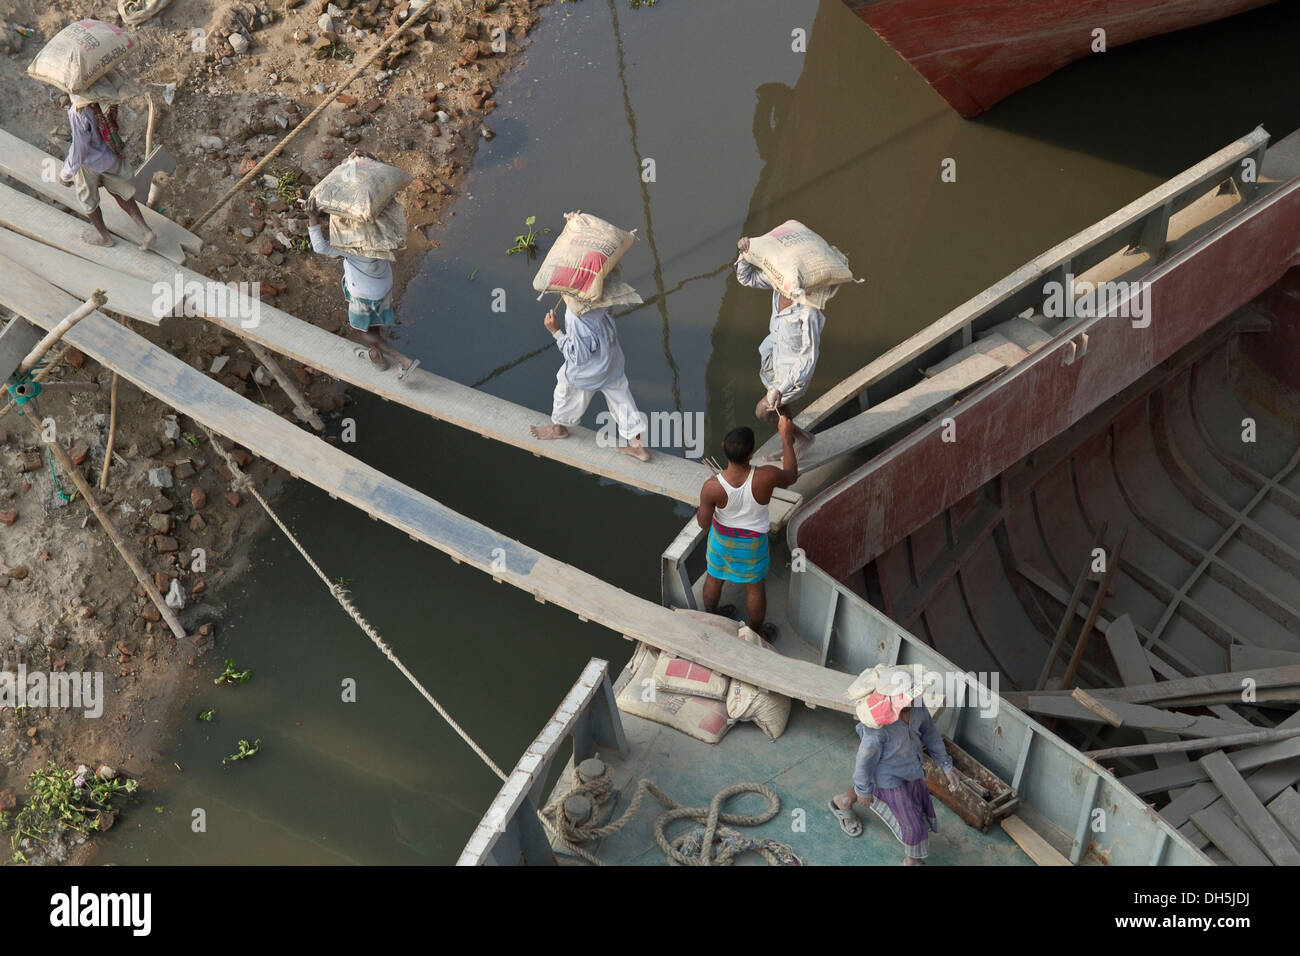 Le déchargement d'un navire transporteur de sacs de ciment, rivière Turag, Gabtoli, Dhaka, Bangladesh, l'Asie du Sud, Asie Banque D'Images